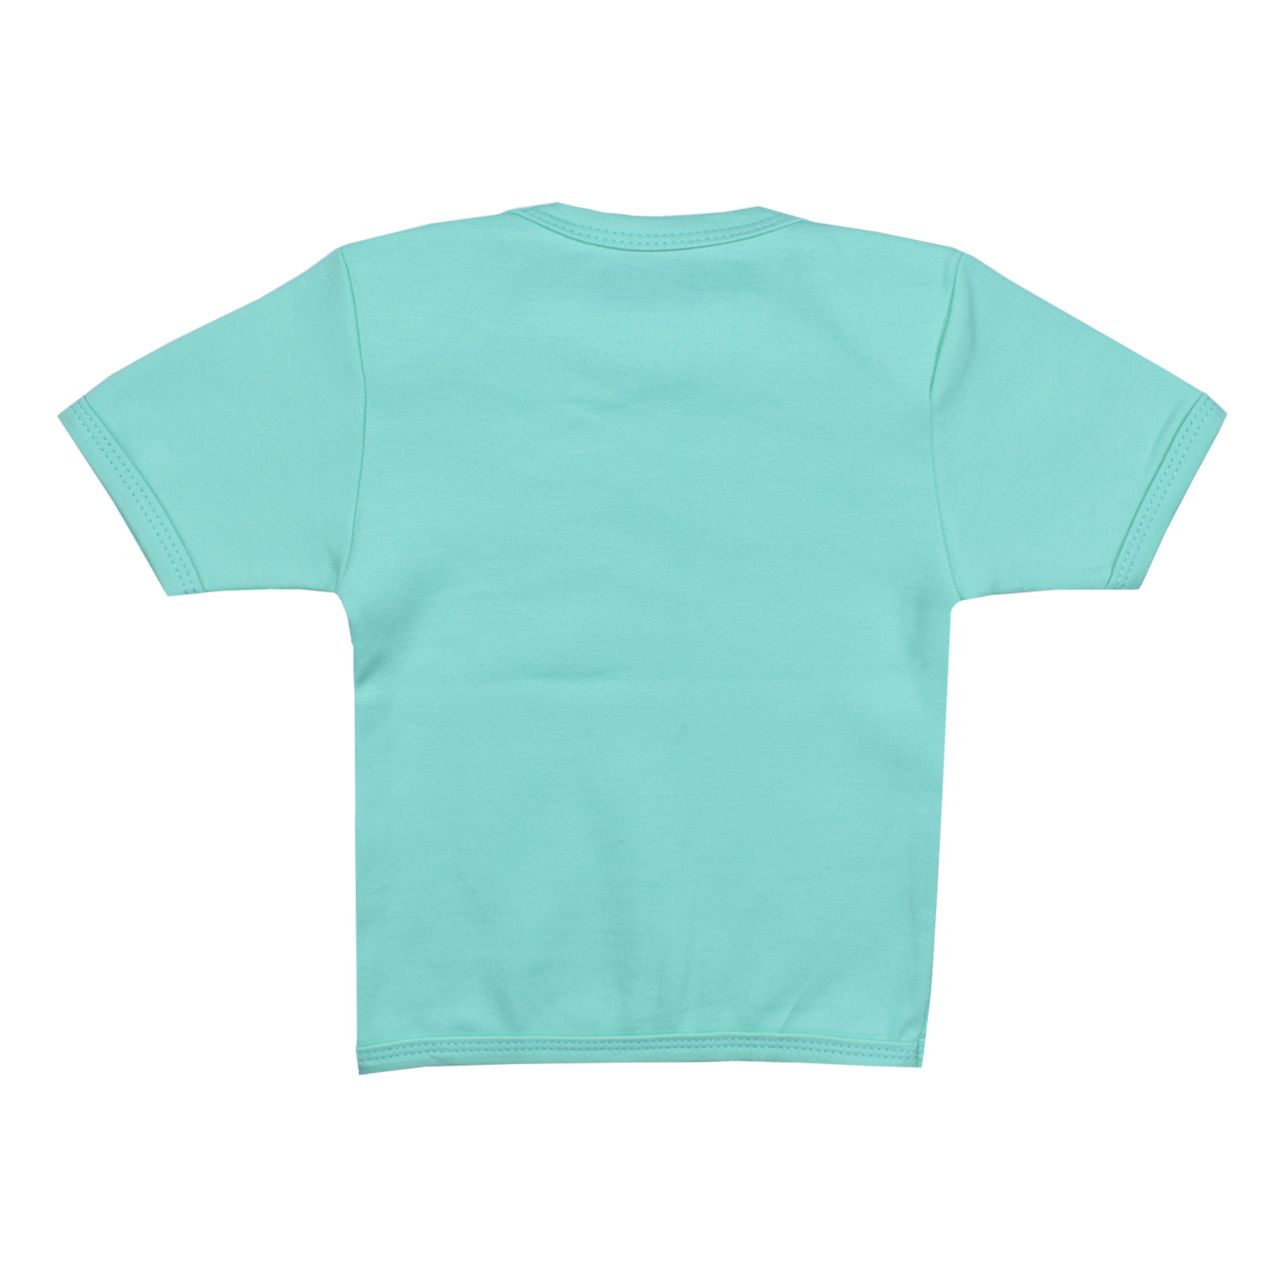 تی شرت آستین کوتاه نوزادی اسپیکو کد 301 -4 بسته دو عددی -  - 4